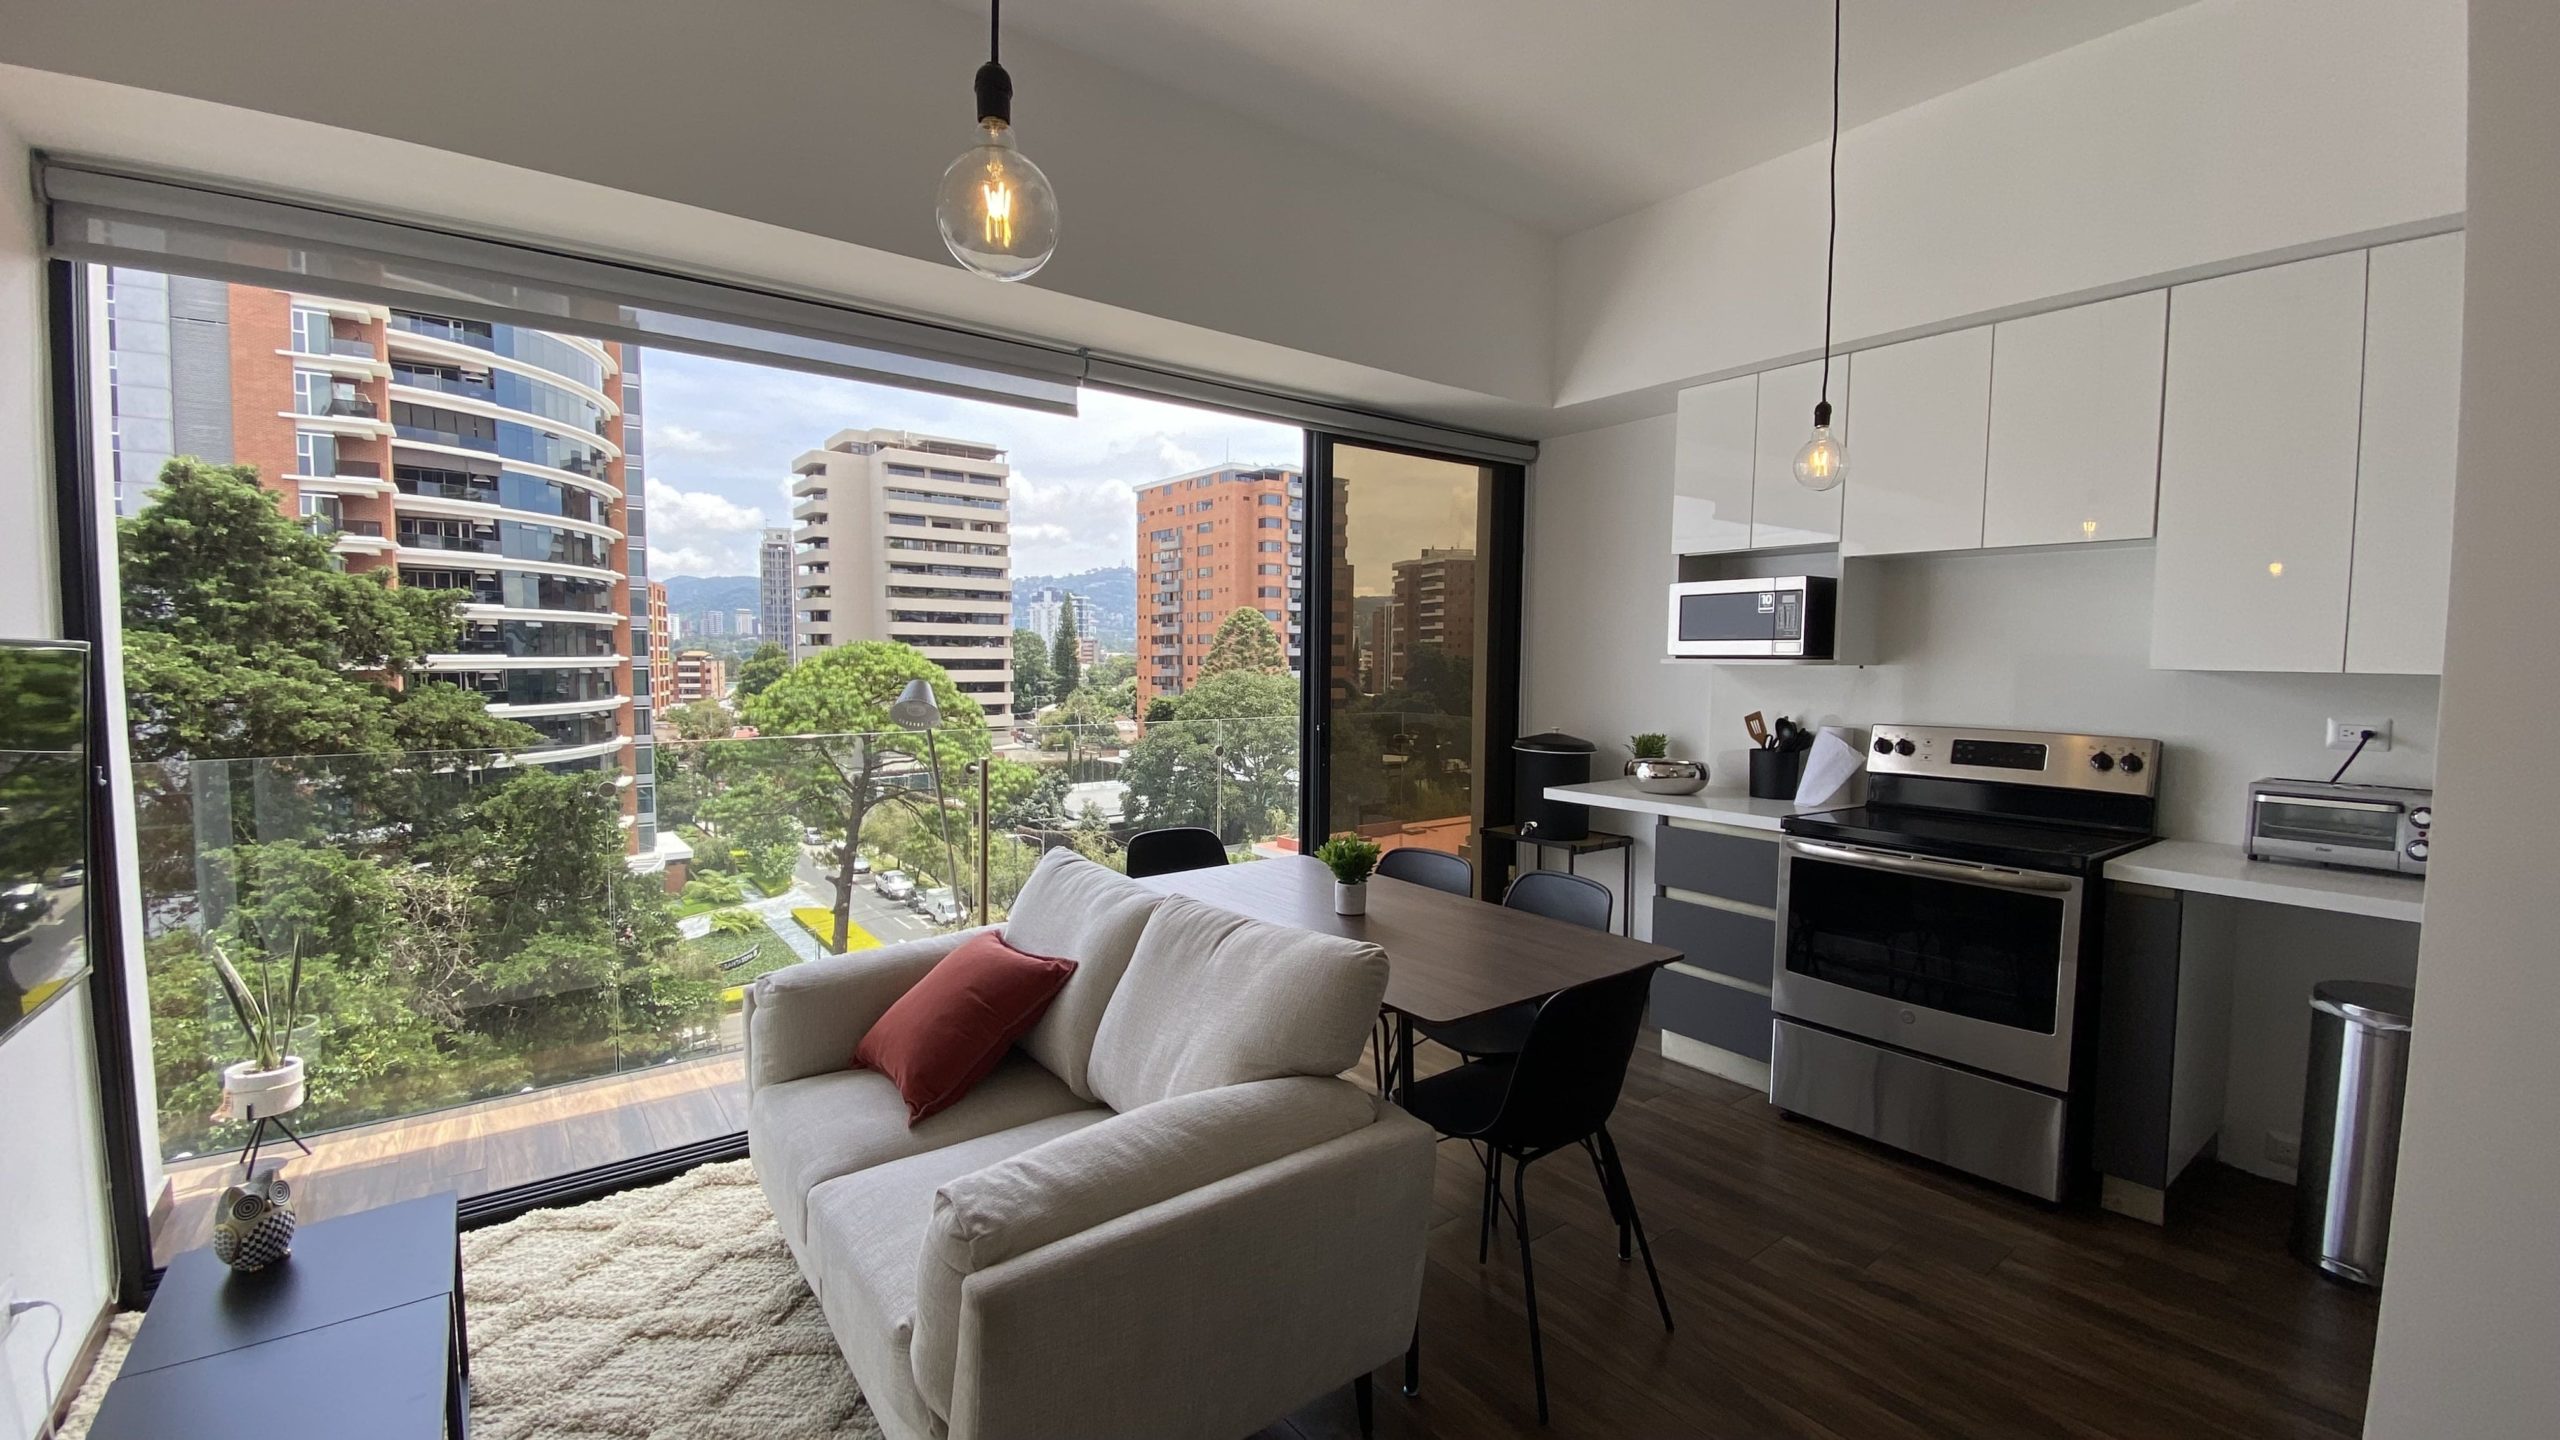 10 cosas que debe tener una cocina cuando alquilamos un apartamento, Alquilar Apartamento Cáceres, Casco histórico